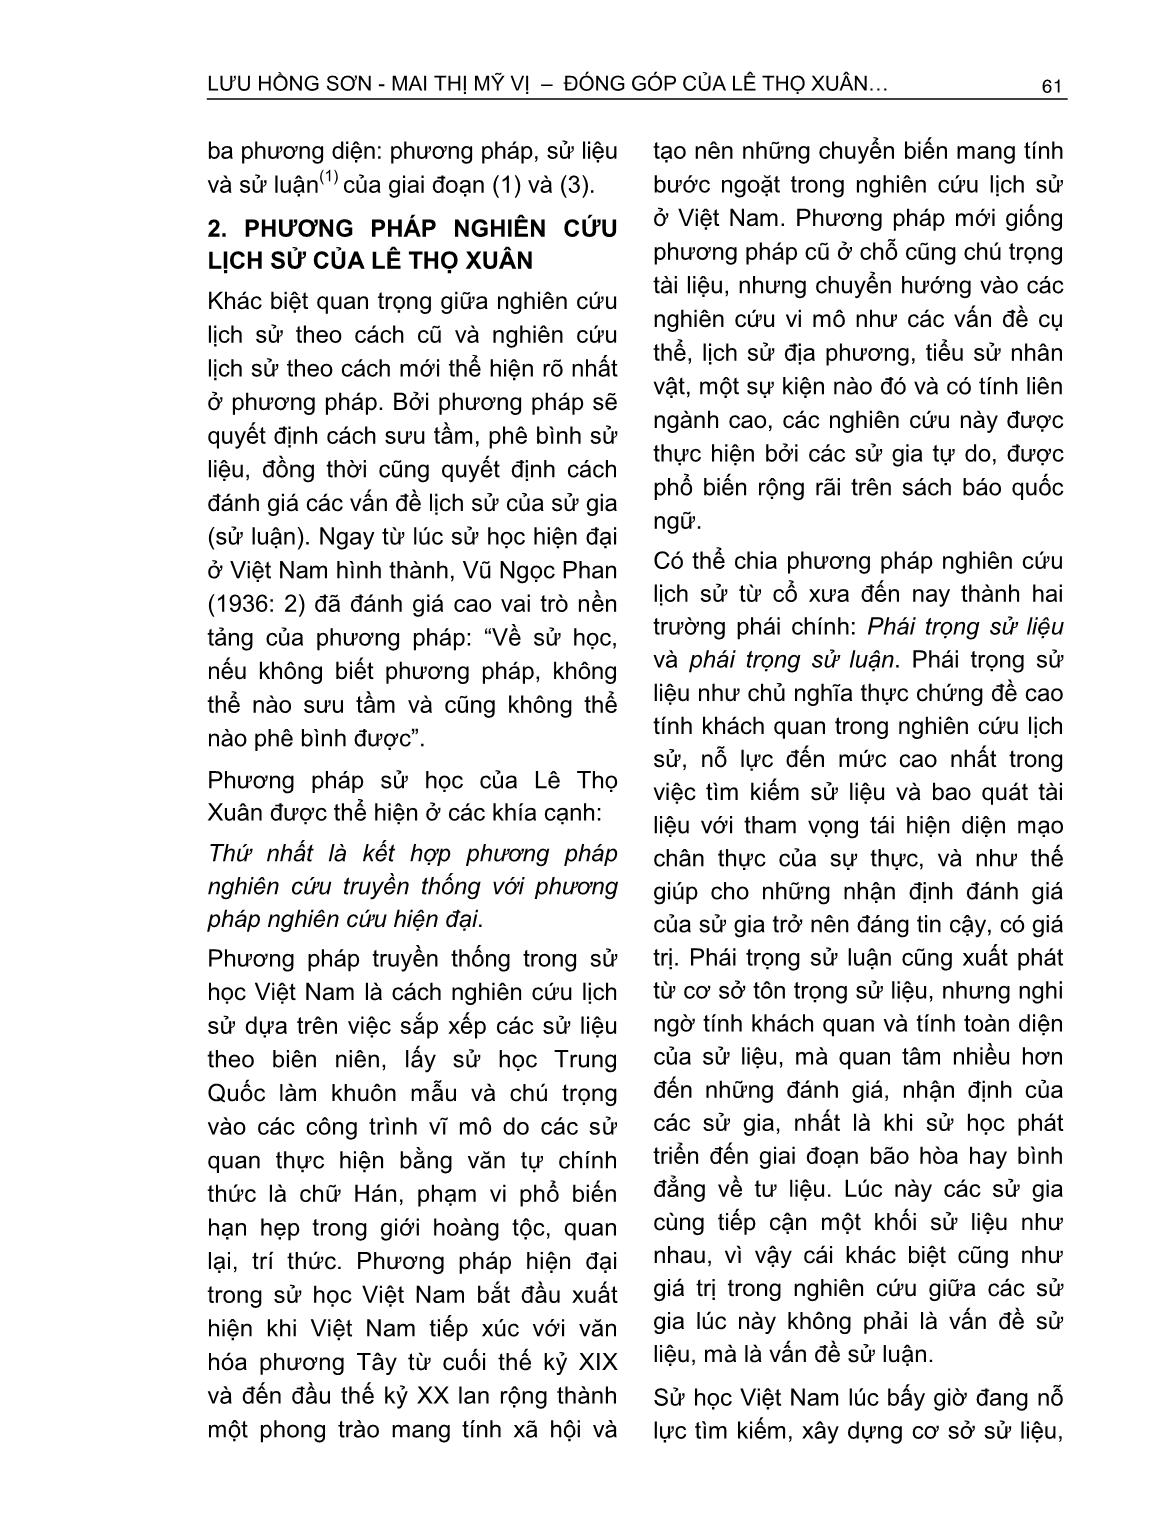 Đóng góp của Lê Thọ Xuân trong nghiên cứu lịch sử Nam Bộ triều Nguyễn thế kỷ XIX trang 2